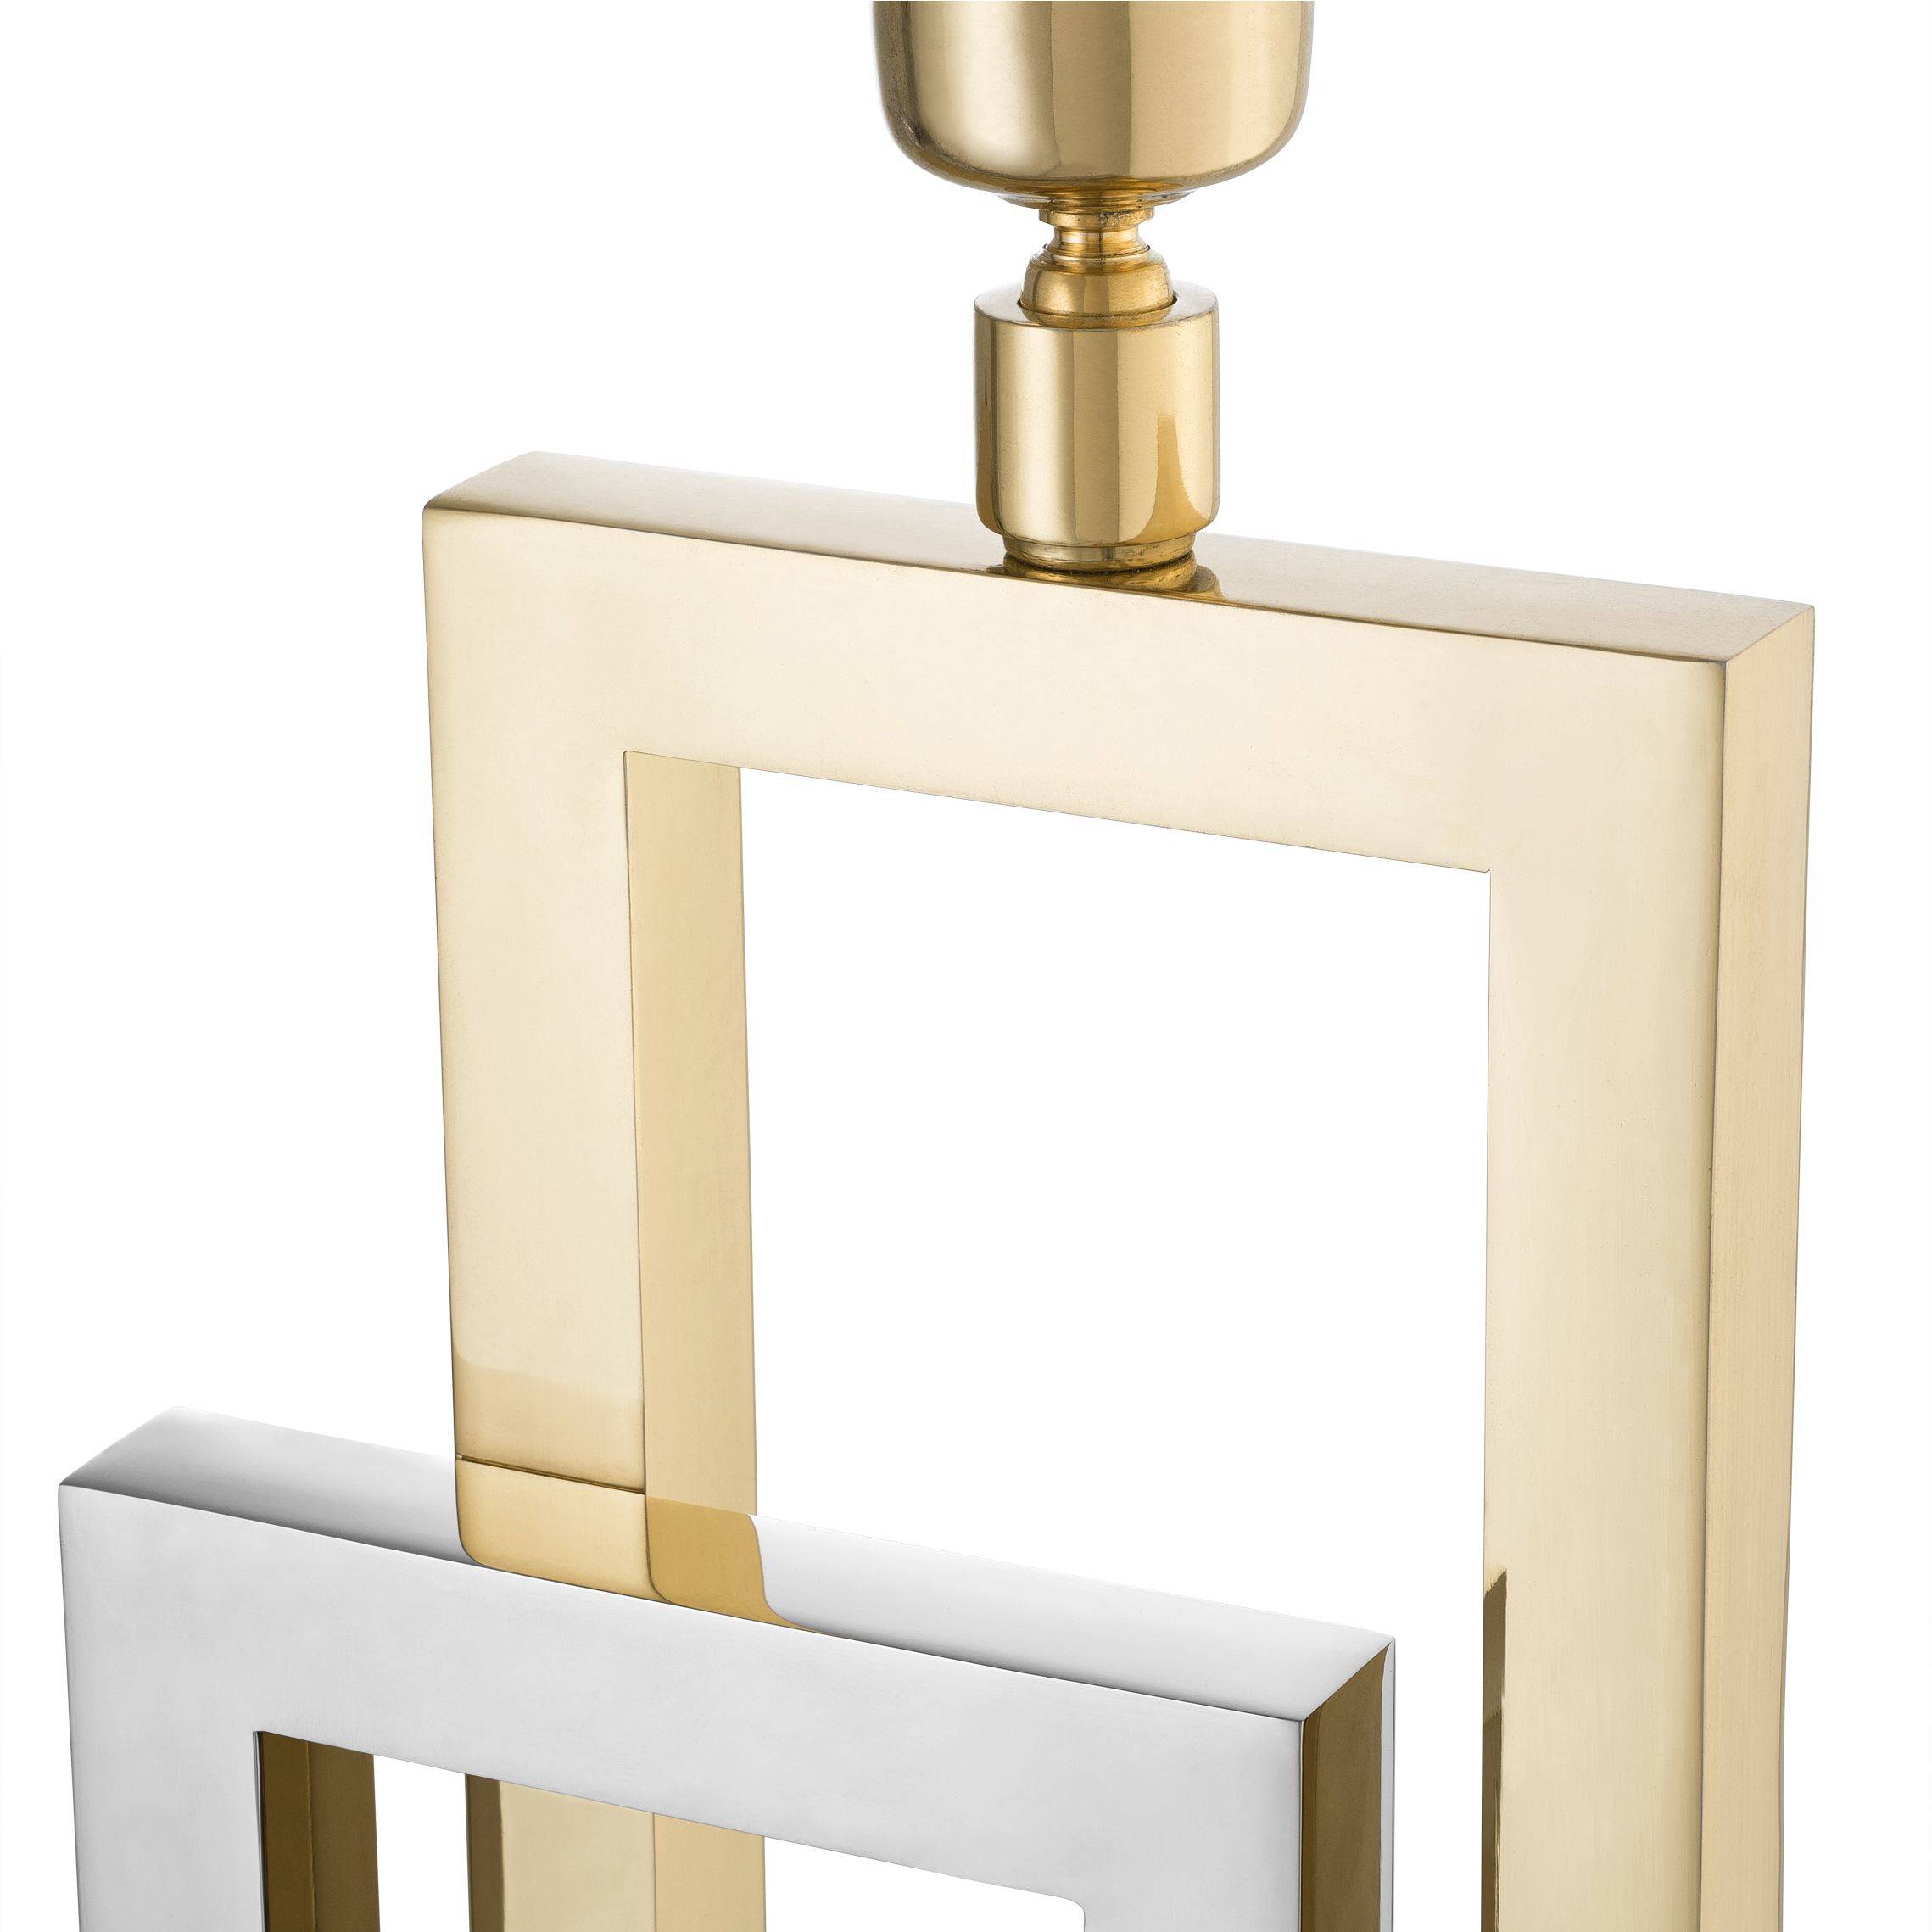 Regine Table Lamp - [Gold&Nickel] - Eichholtz - Luxury Lighting Boutique